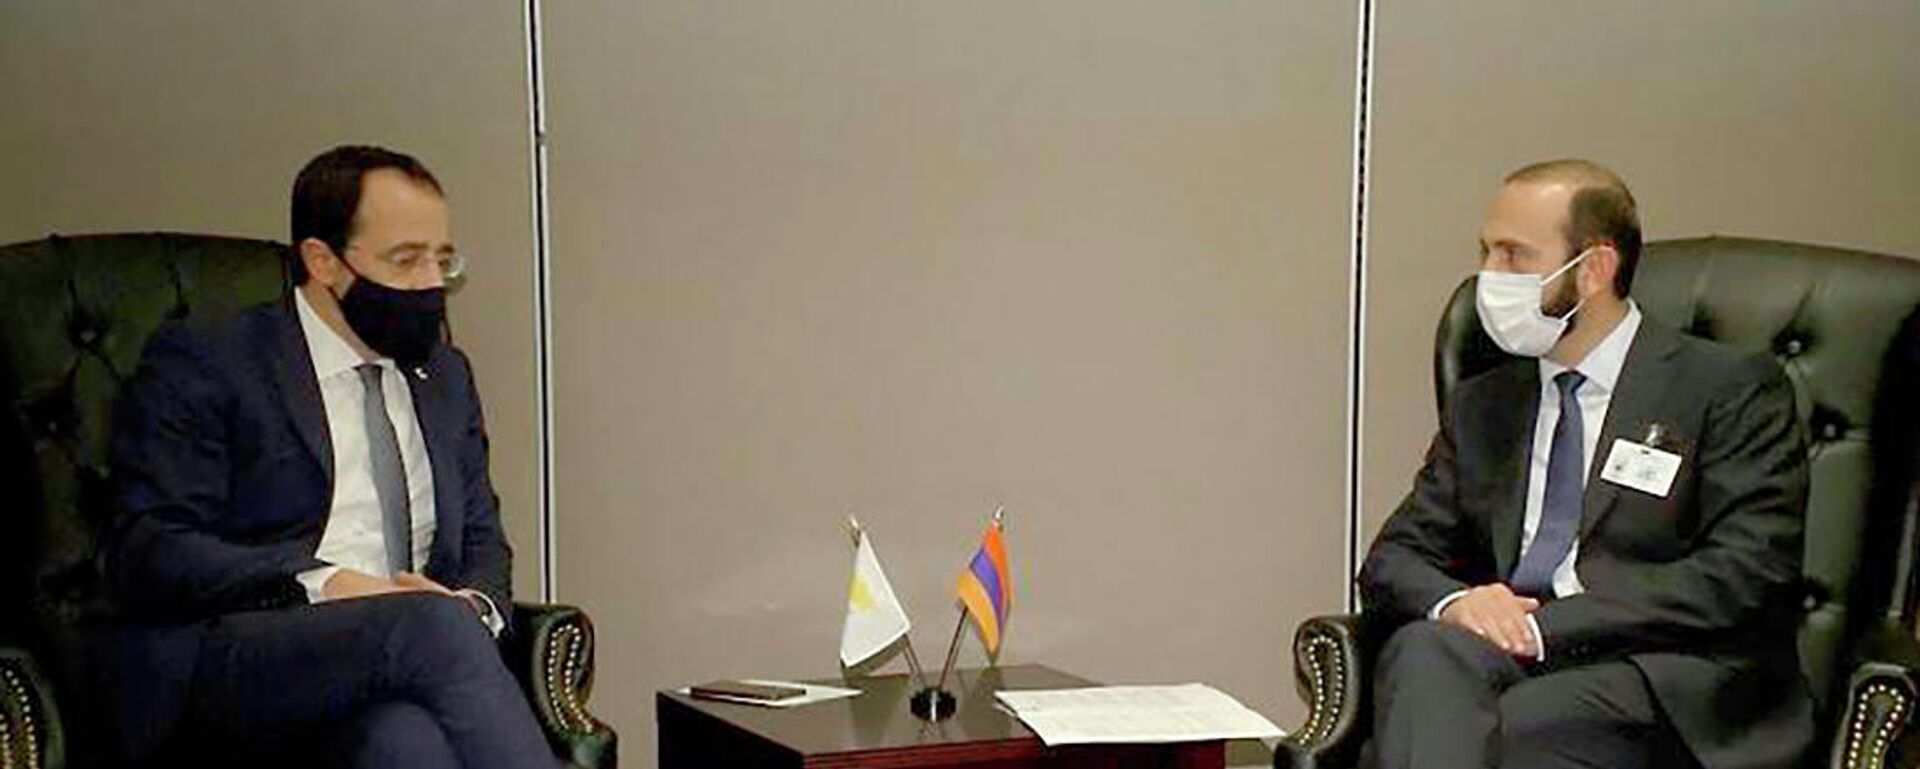 Встреча министров иностранных дел Армении и Кипра Арарата Мирзояна и Никоса Христодулидеса в рамках 76-й сессии Генассамблеи ООН (24 сентября 2021). Нью-Йорк - Sputnik Армения, 1920, 24.09.2021